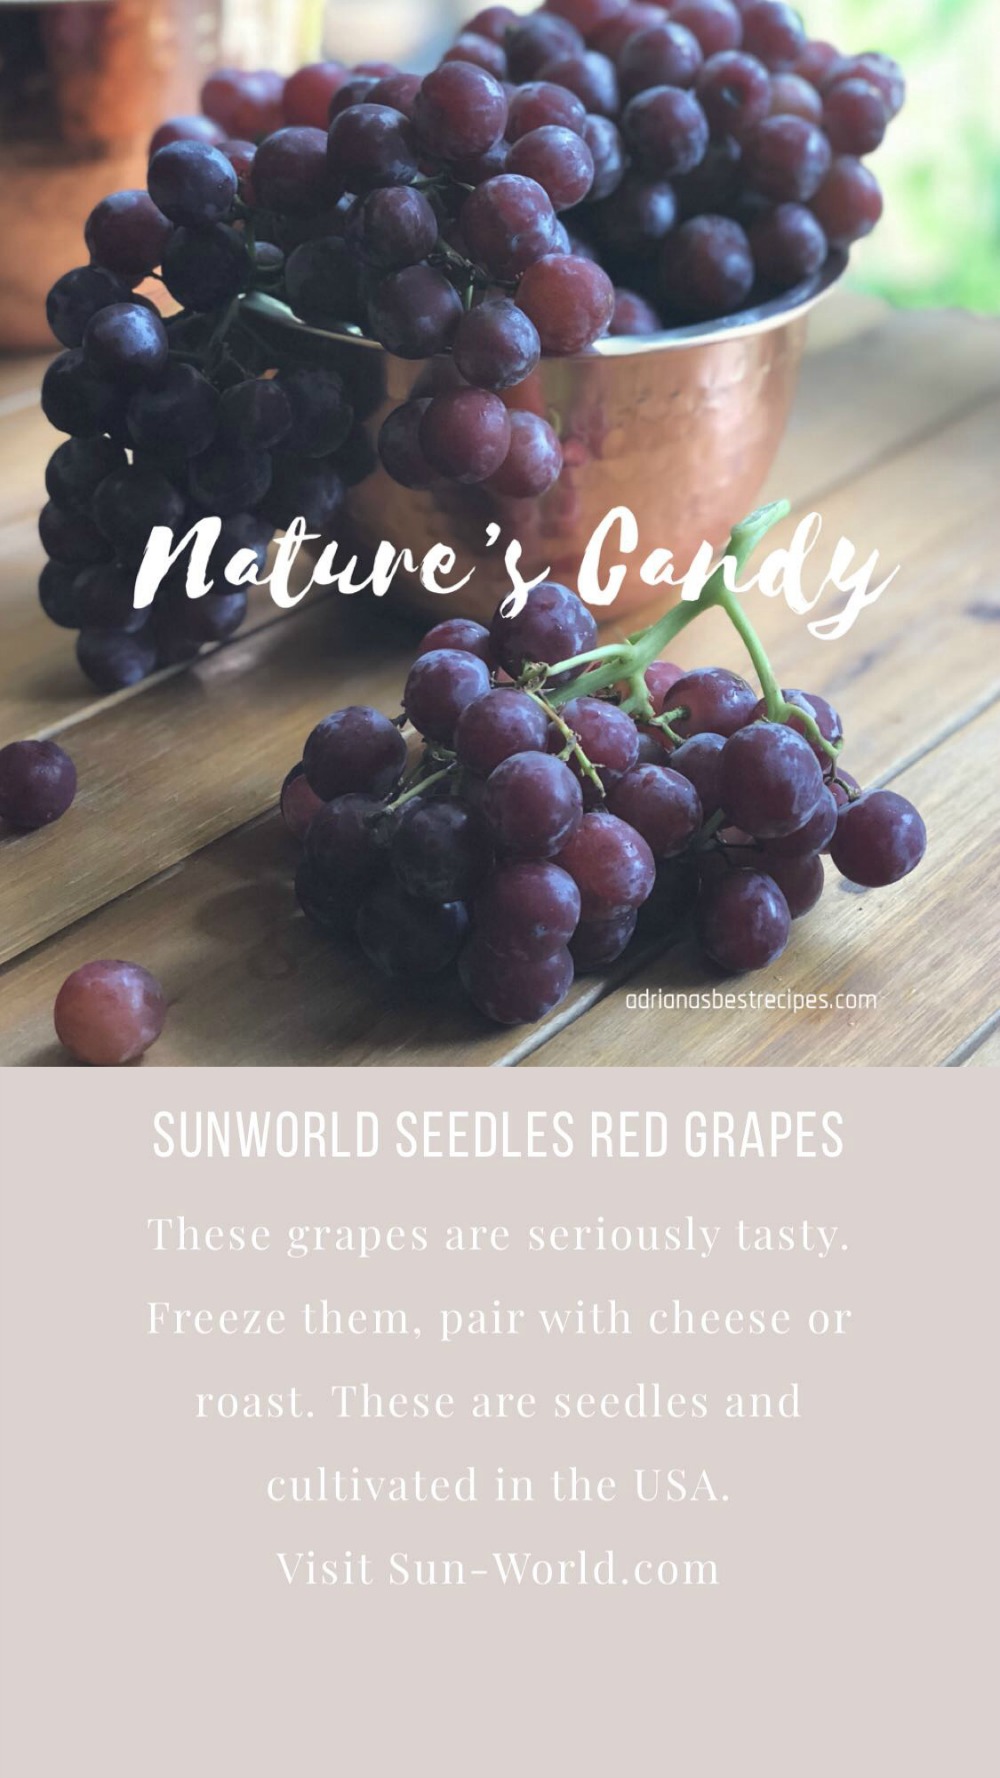 Grapes from SunWorld